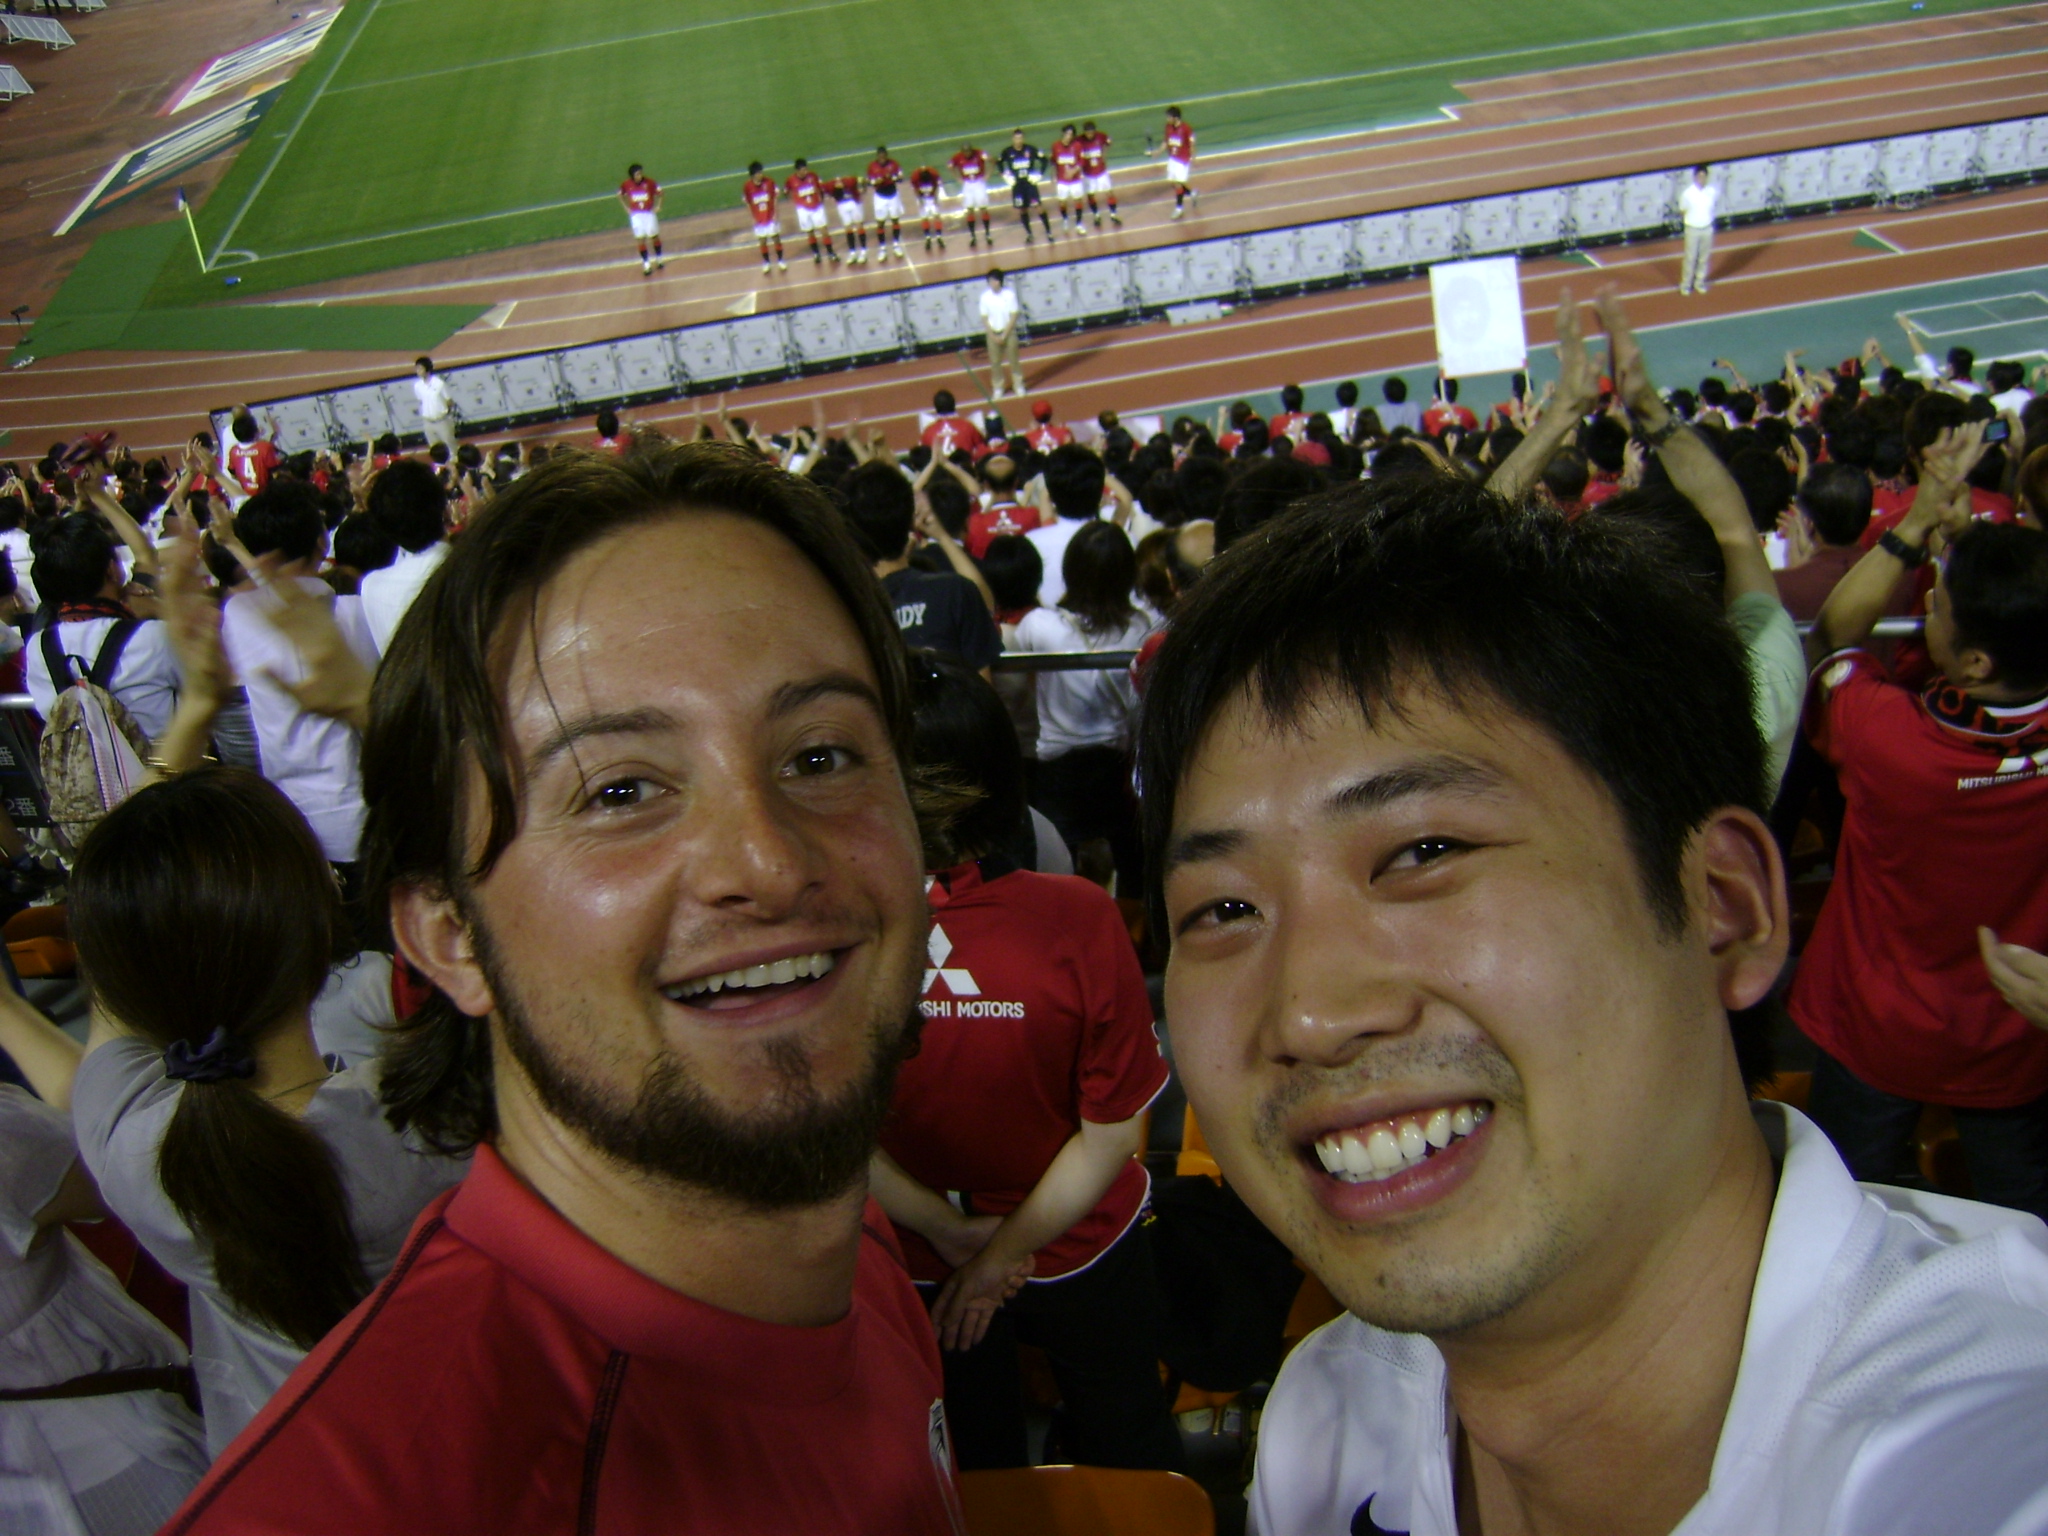 Com meu amigo André em um jogo de futebol em Tóquio